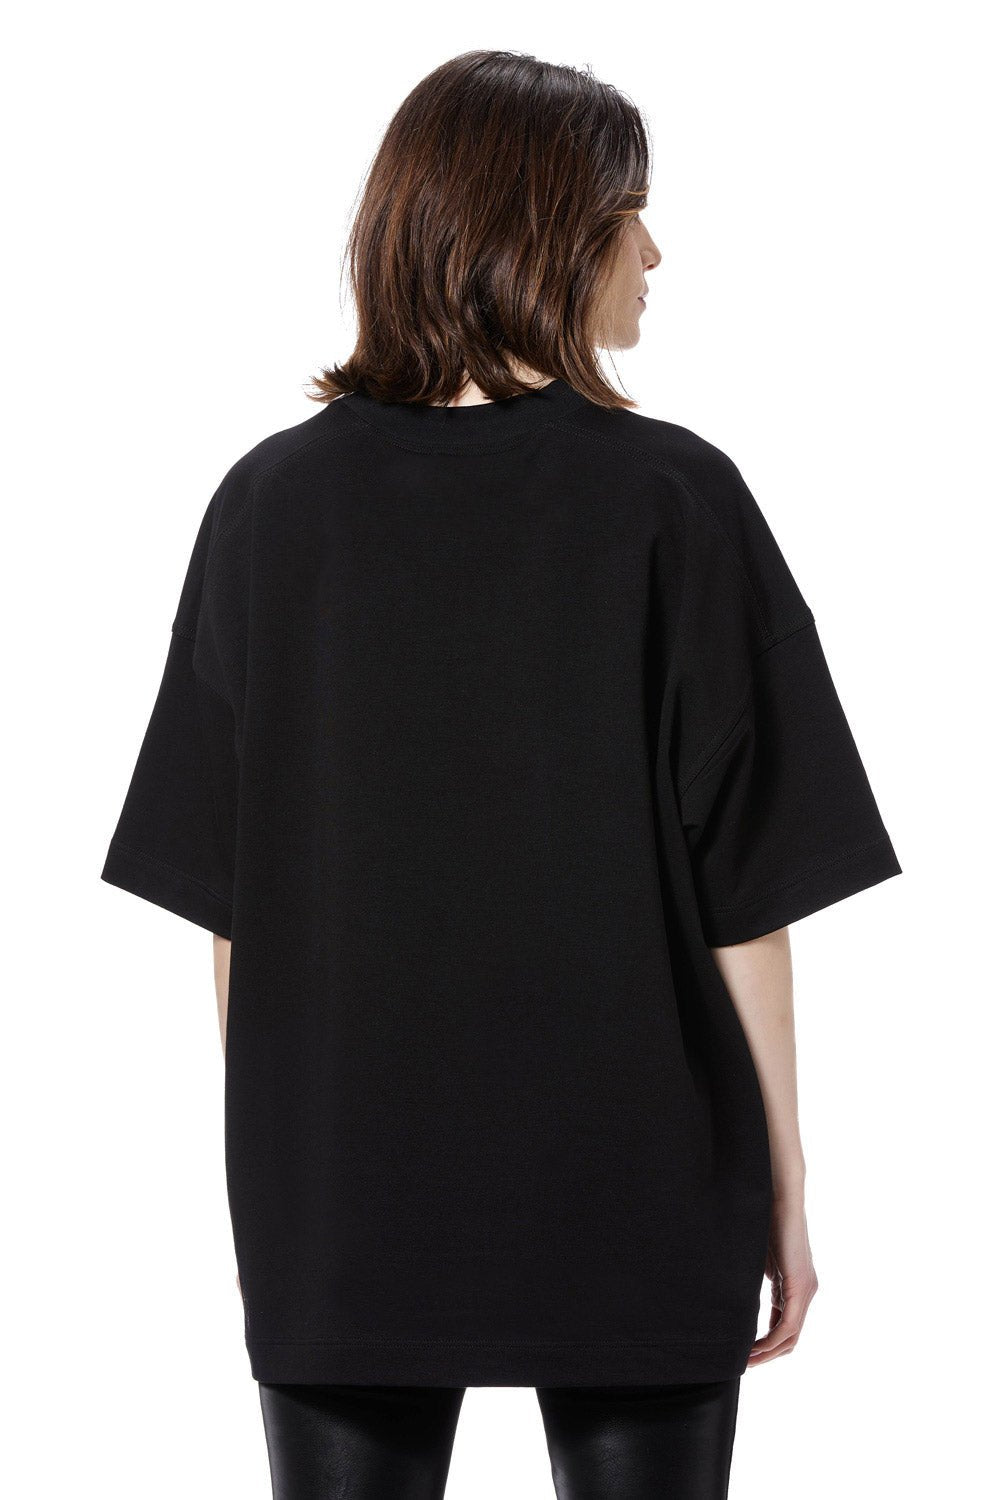 Set 3 Tricouri Femei | Confort & Eleganță | Alb, Negru, Gri | Atelier Hamza